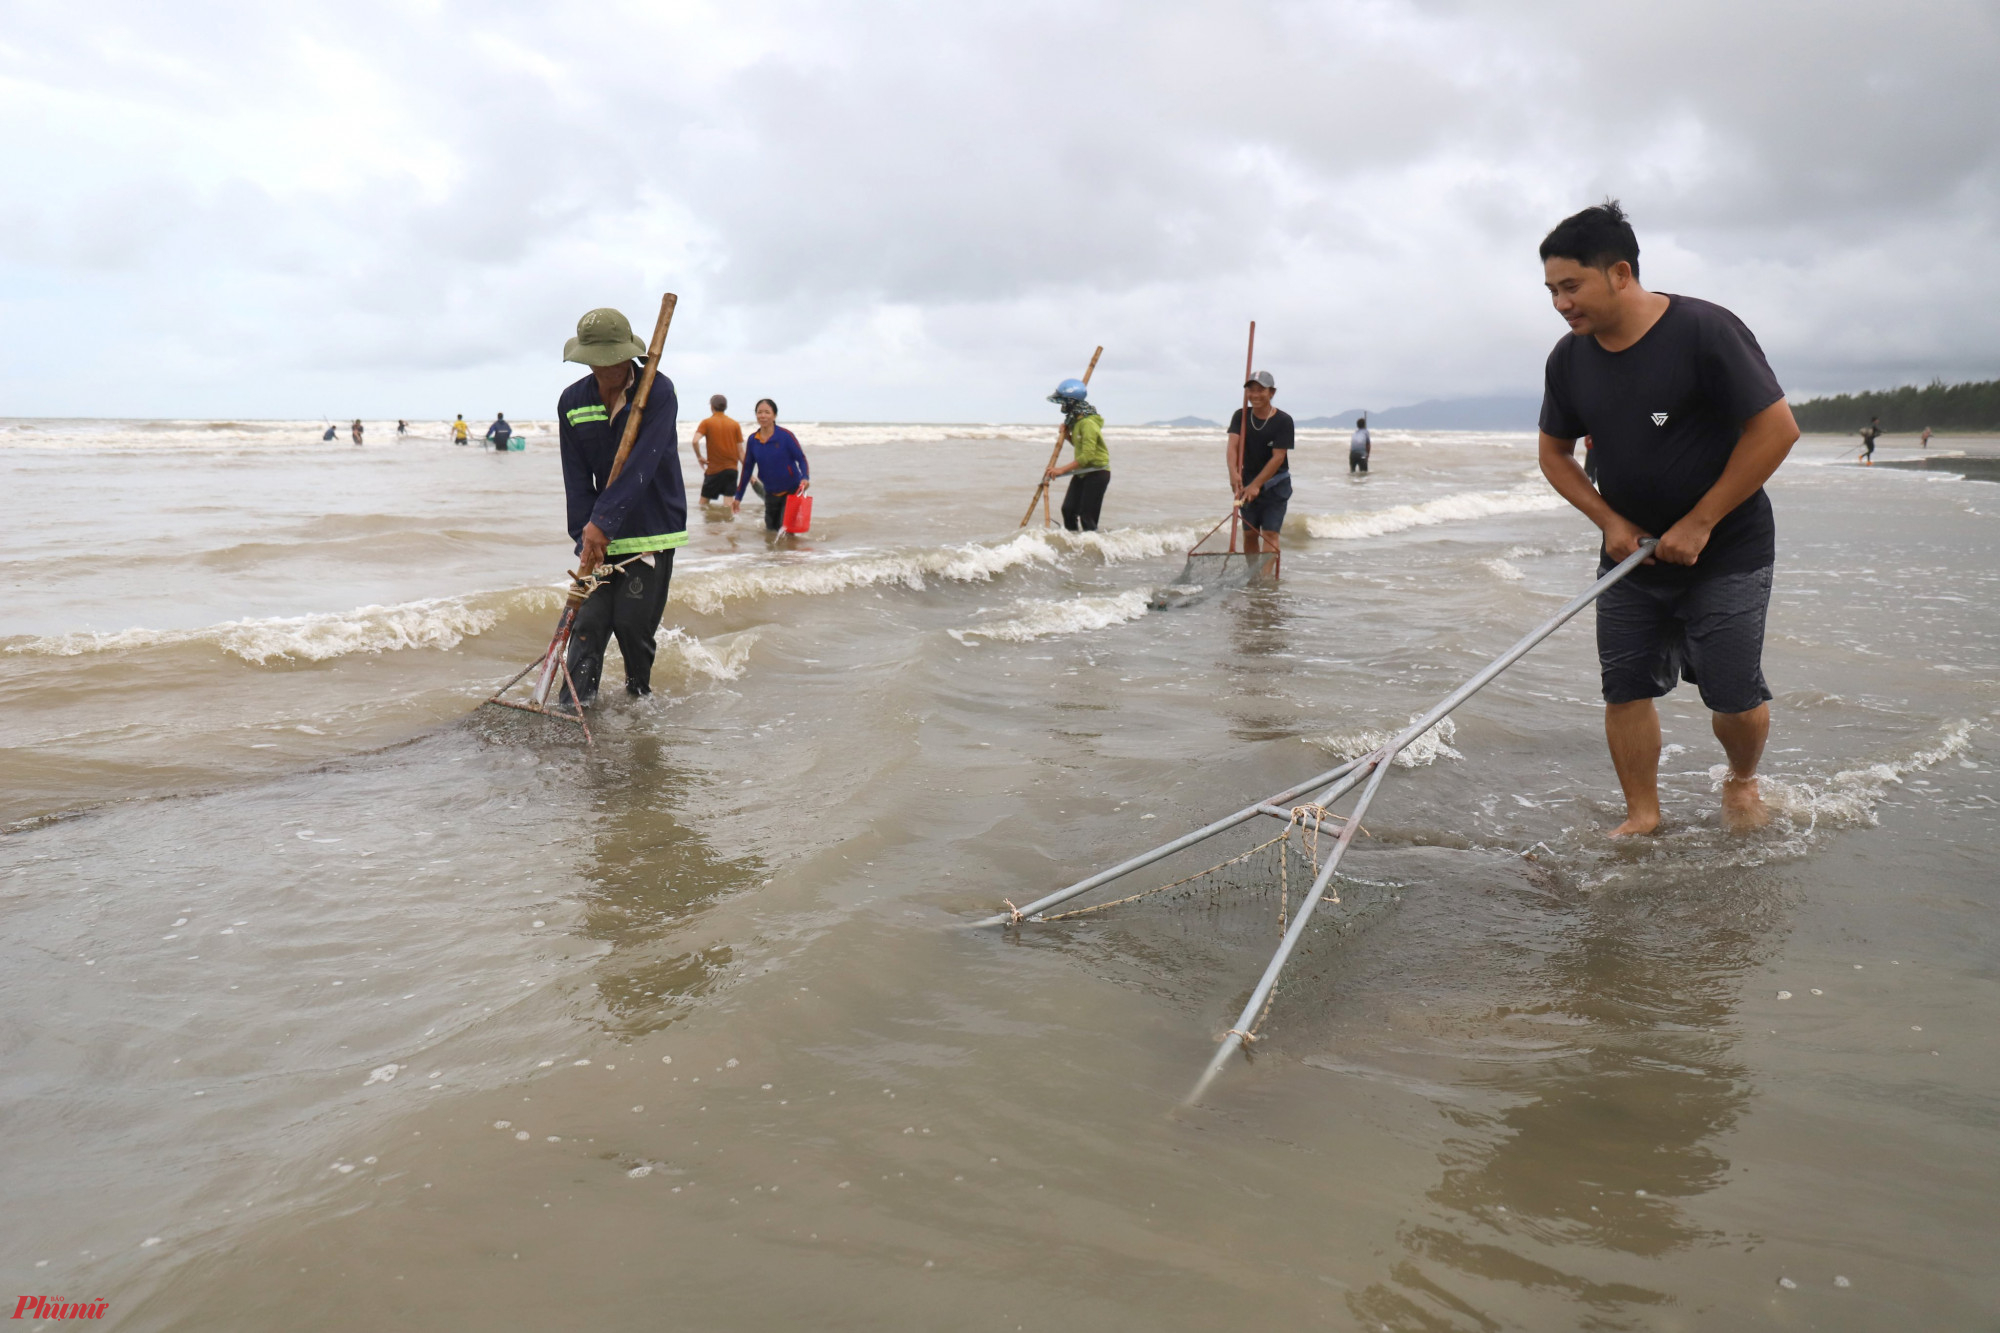 Sò lông trôi dạt vào bờ có kích thước vừa và nhỏ. Họ tập trung thành từng nhóm 3-5 người, dùng vợt lưới, rổ, xô chậu để nhặt sò trôi dạt vào bờ biển.